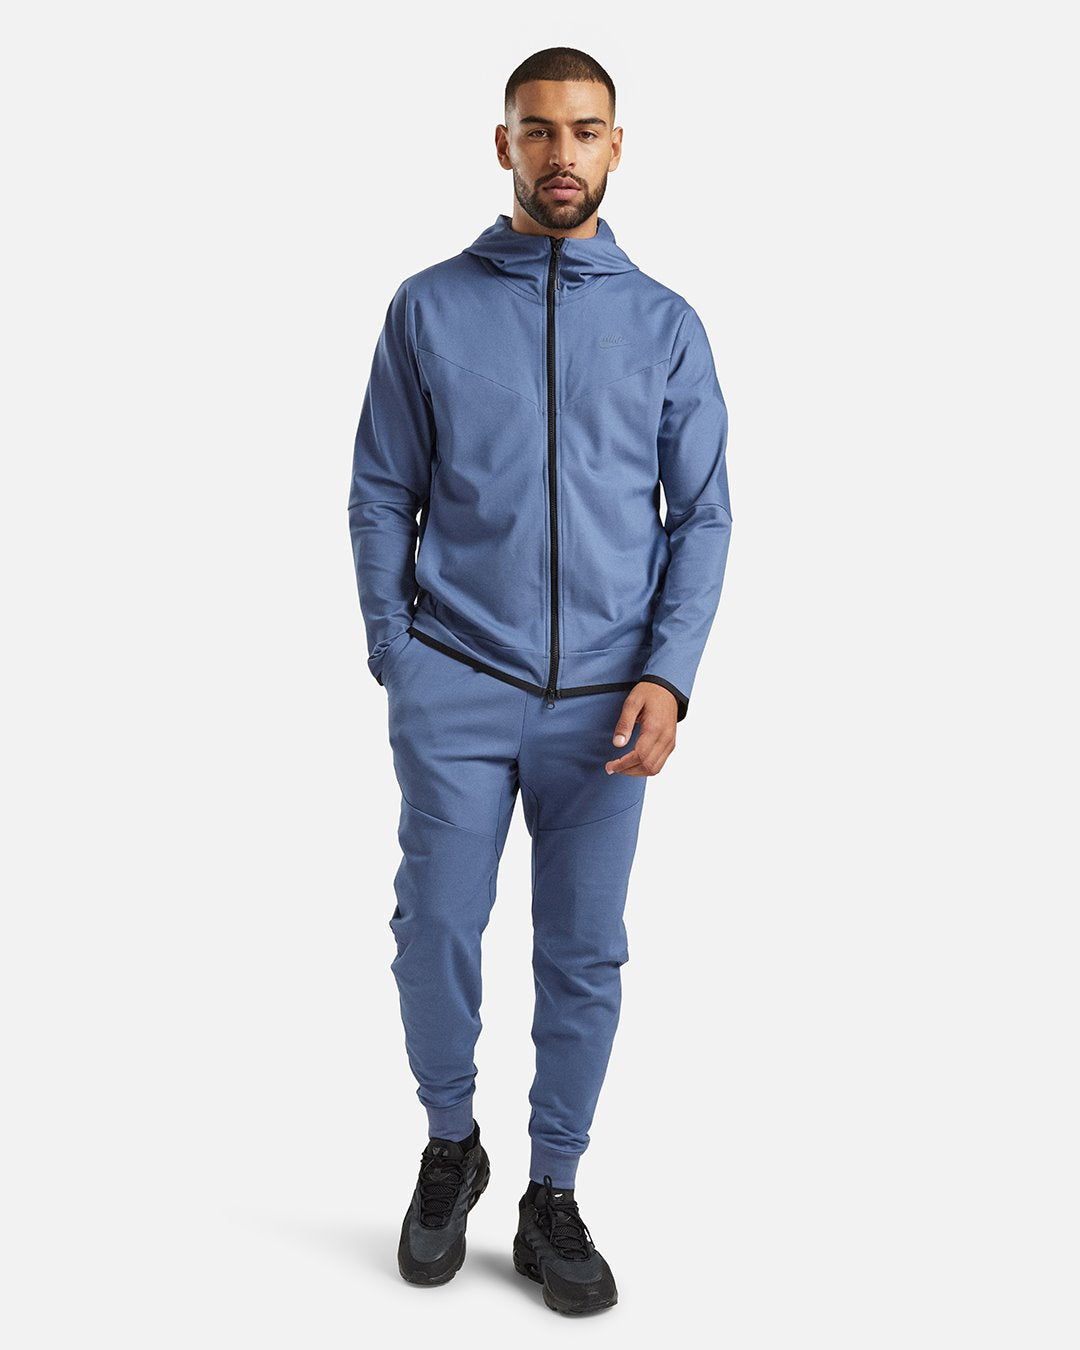 Survêtement Nike Tech Fleece Lightweight - Bleu/Noir